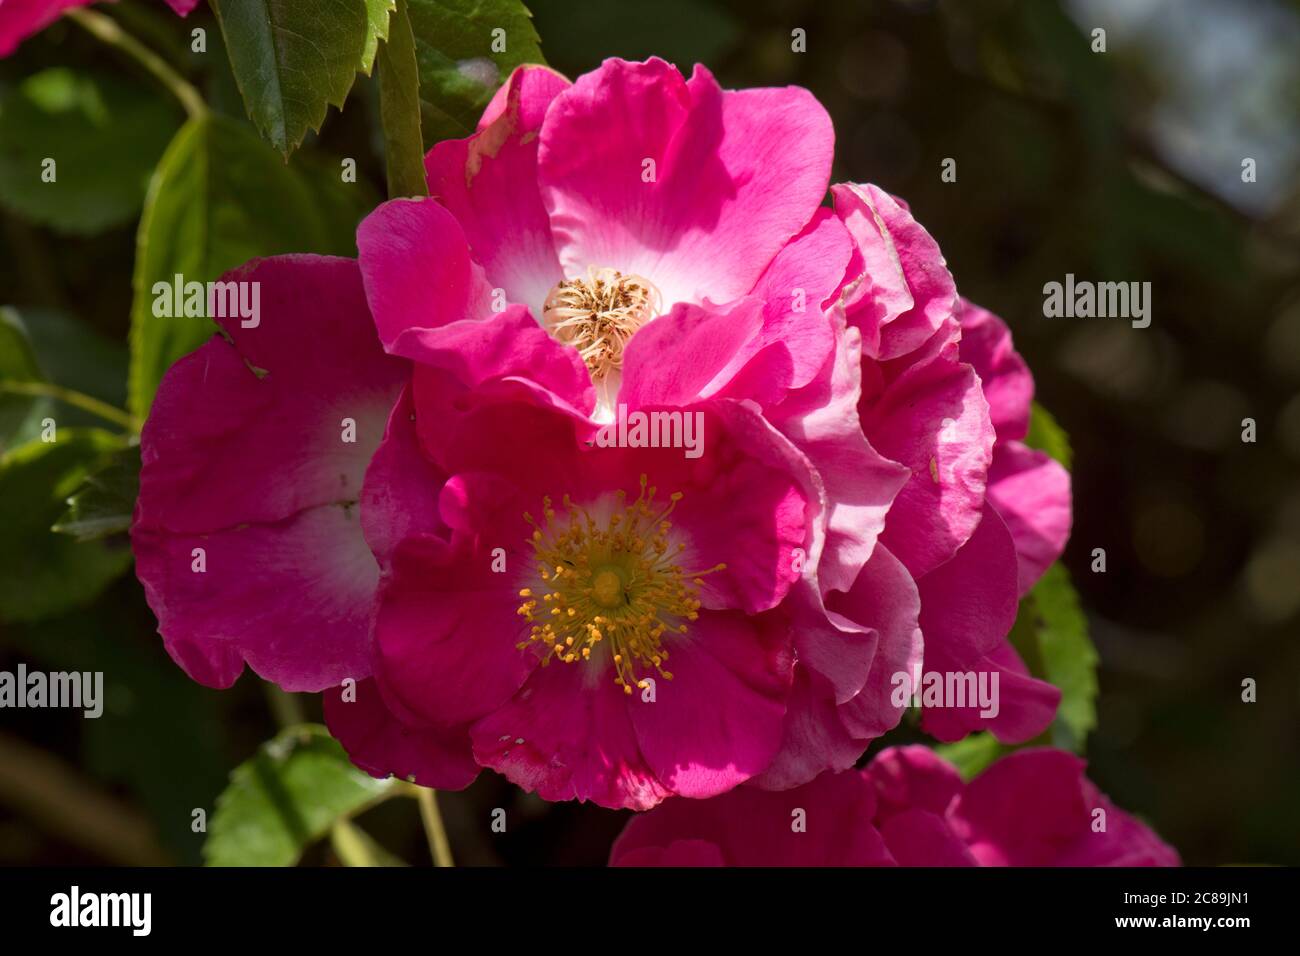 Fiori prolifici rosa brillante di rosa rampicante 'pilastro americano' che si accrescono su un arco di rosa alla luce del sole, Berkshire, giugno Foto Stock